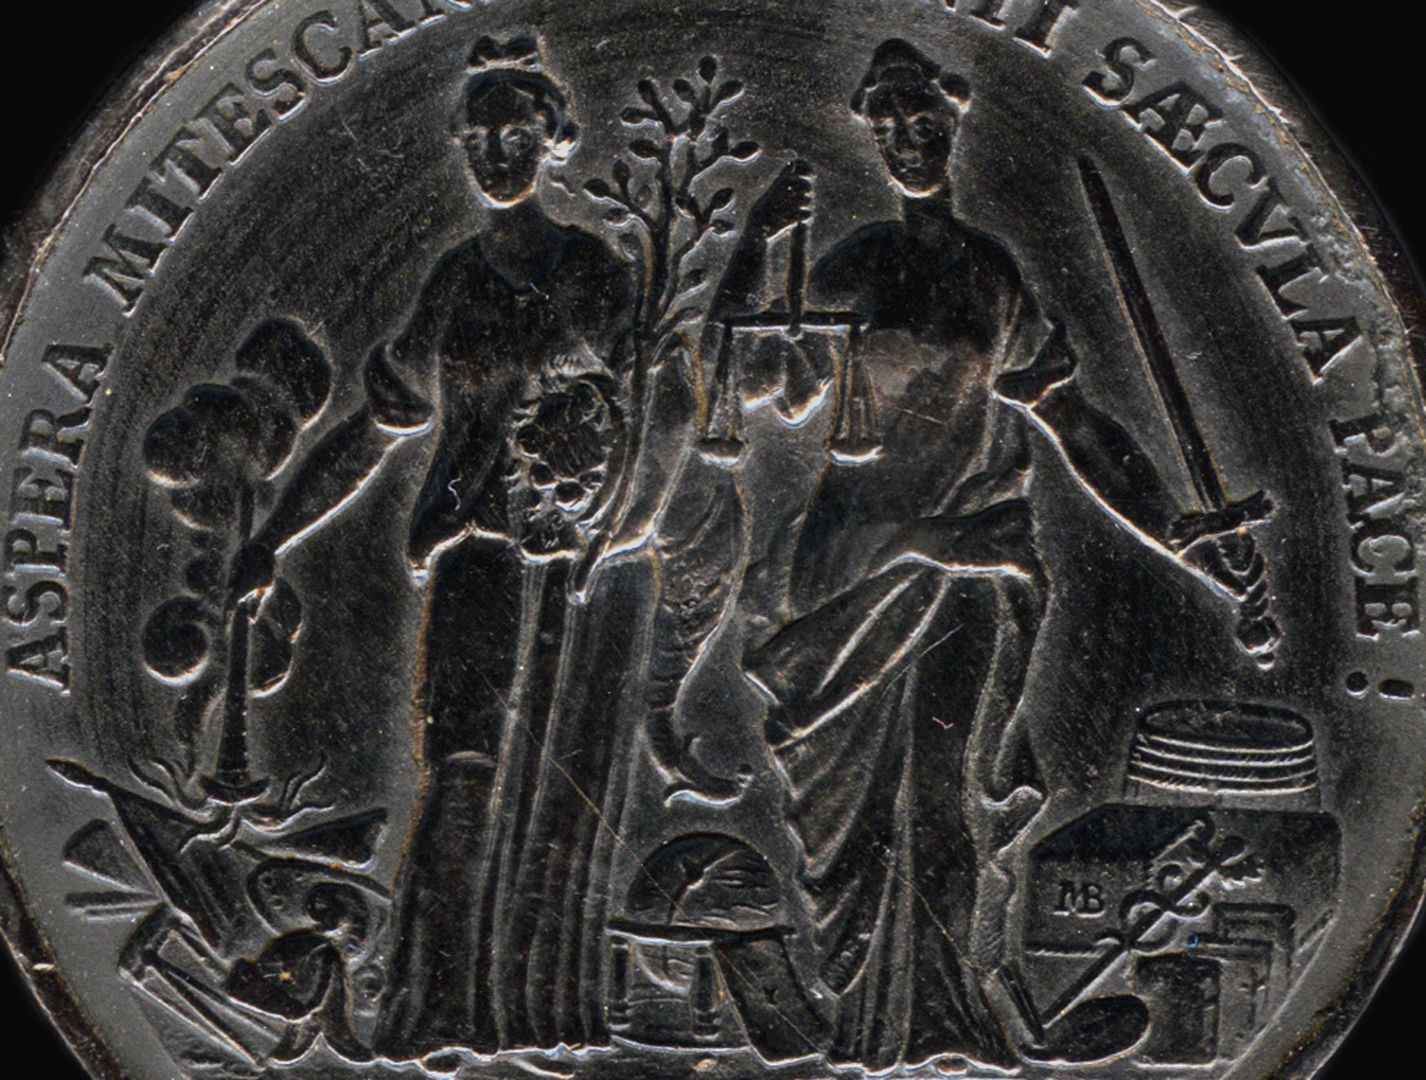 Spielstein mit Stadtansicht Nürnbergs von Osten und Friedensallegorie Spielsteinseite mit Allegorien von Pax und Justitia